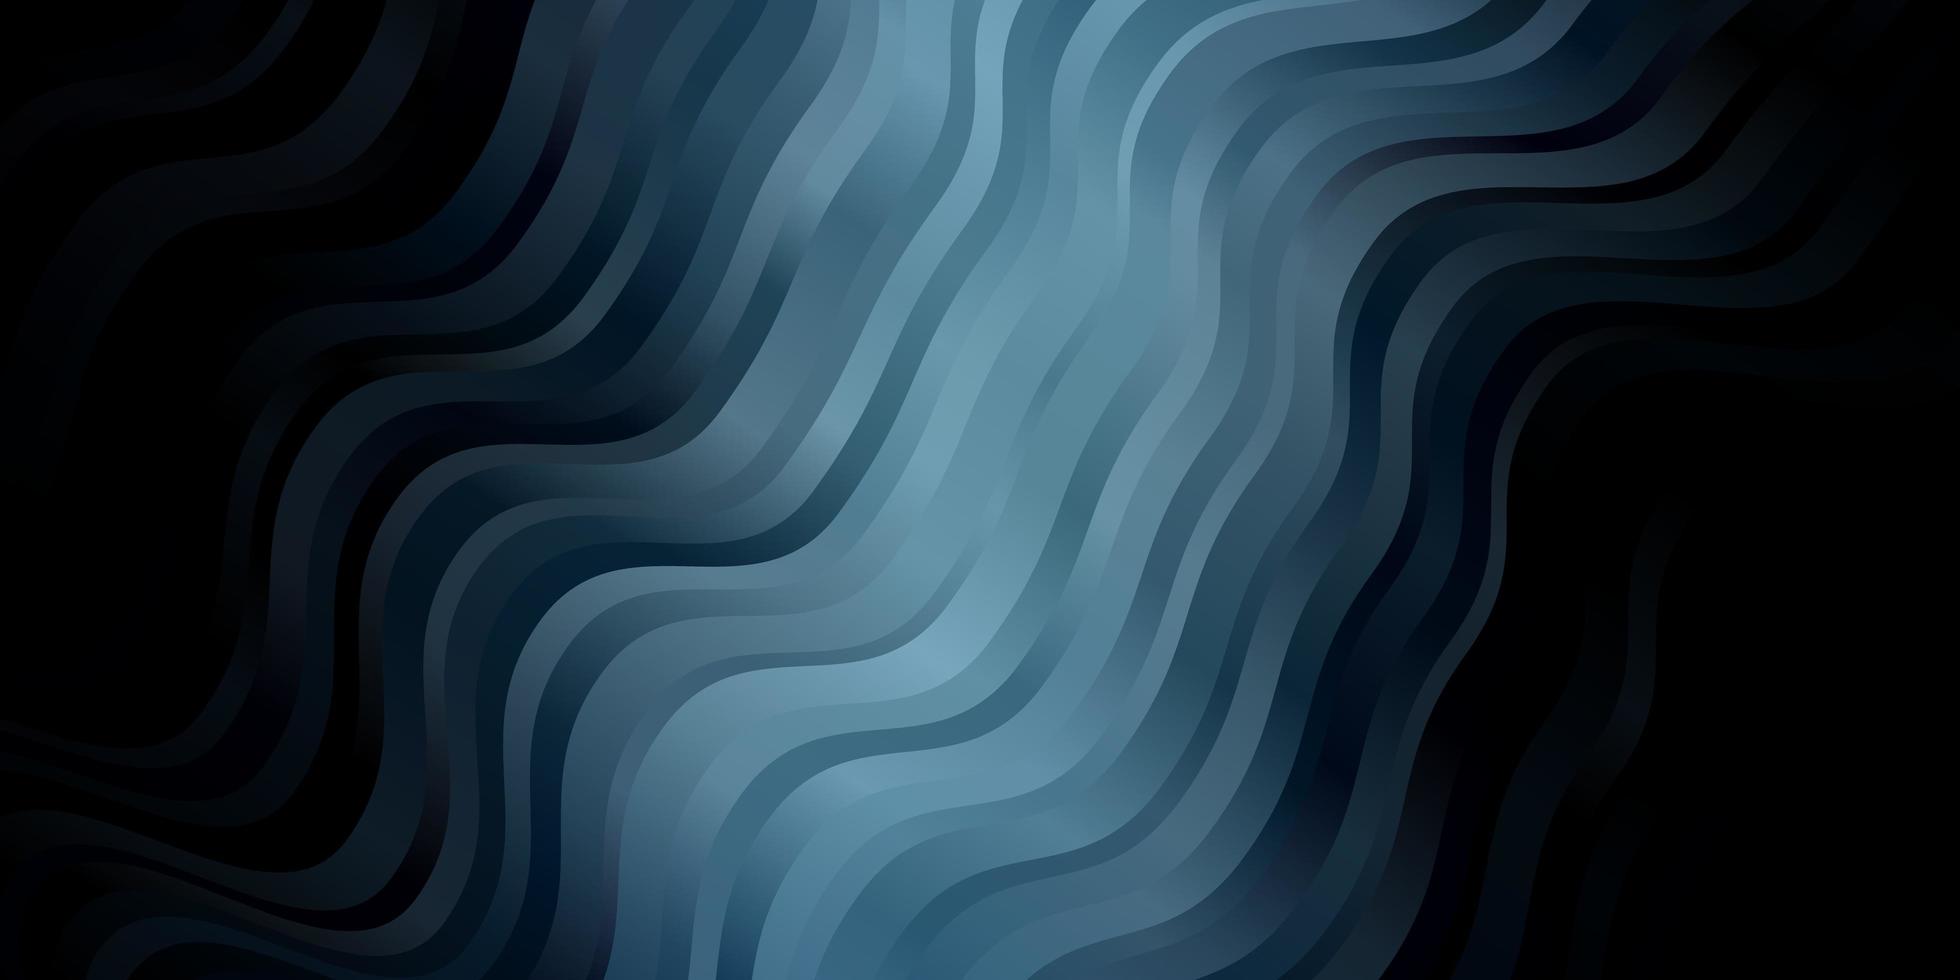 sfondo vettoriale blu scuro con linee piegate illustrazione colorata con motivo a linee curve per annunci pubblicitari